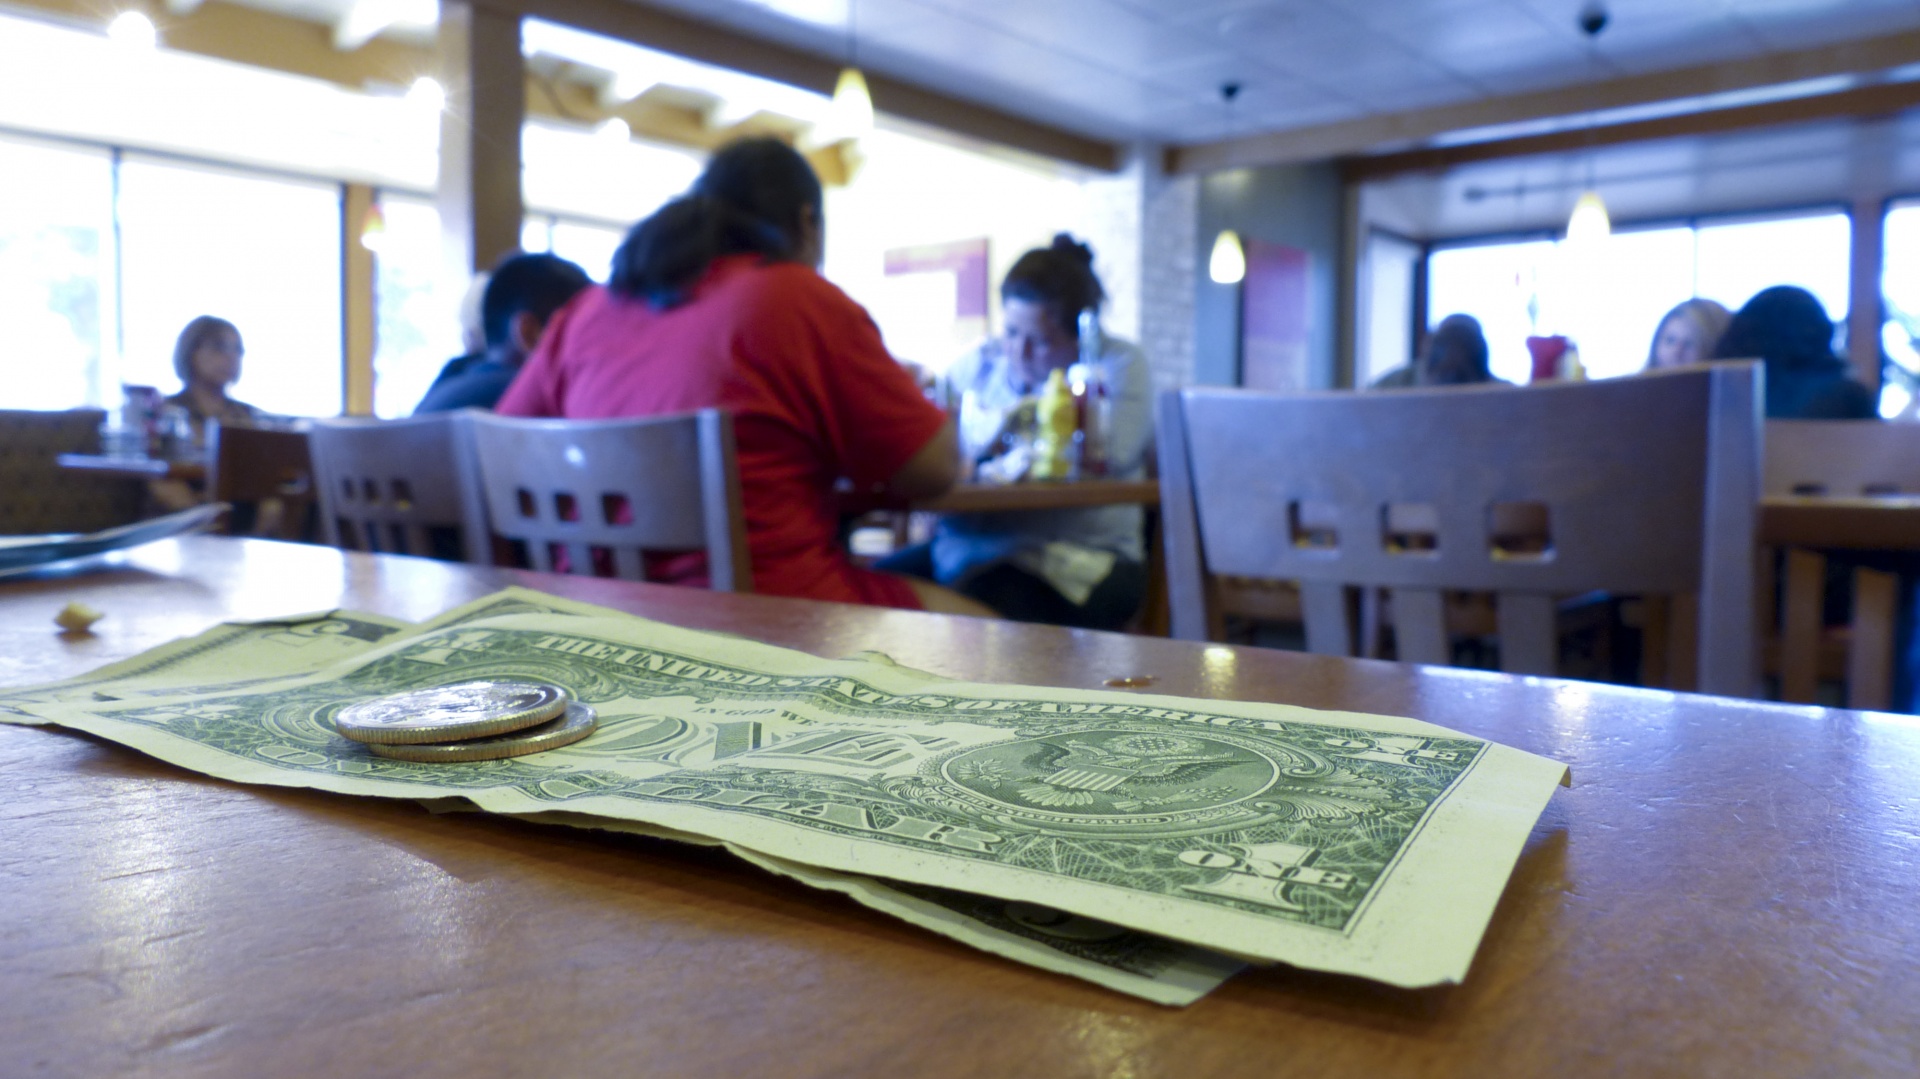 tip money restaurant free photo